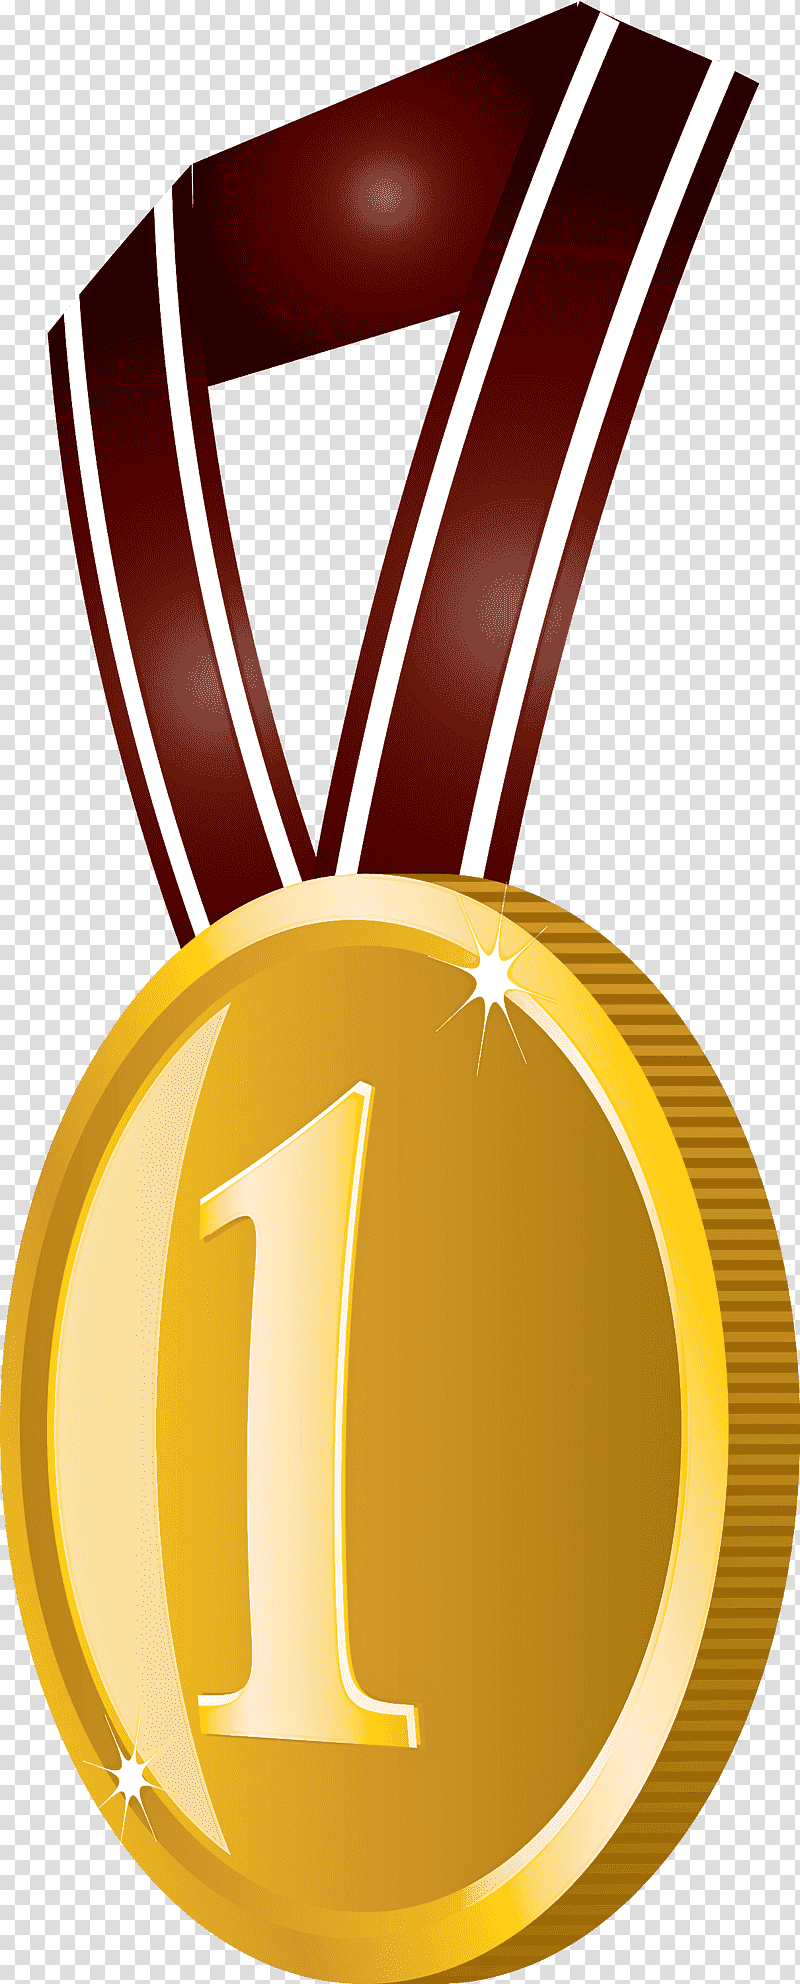 Gold Badge No 1 Badge Award Gold Badge, Medal, Logo, Poster, Gold Medal transparent background PNG clipart